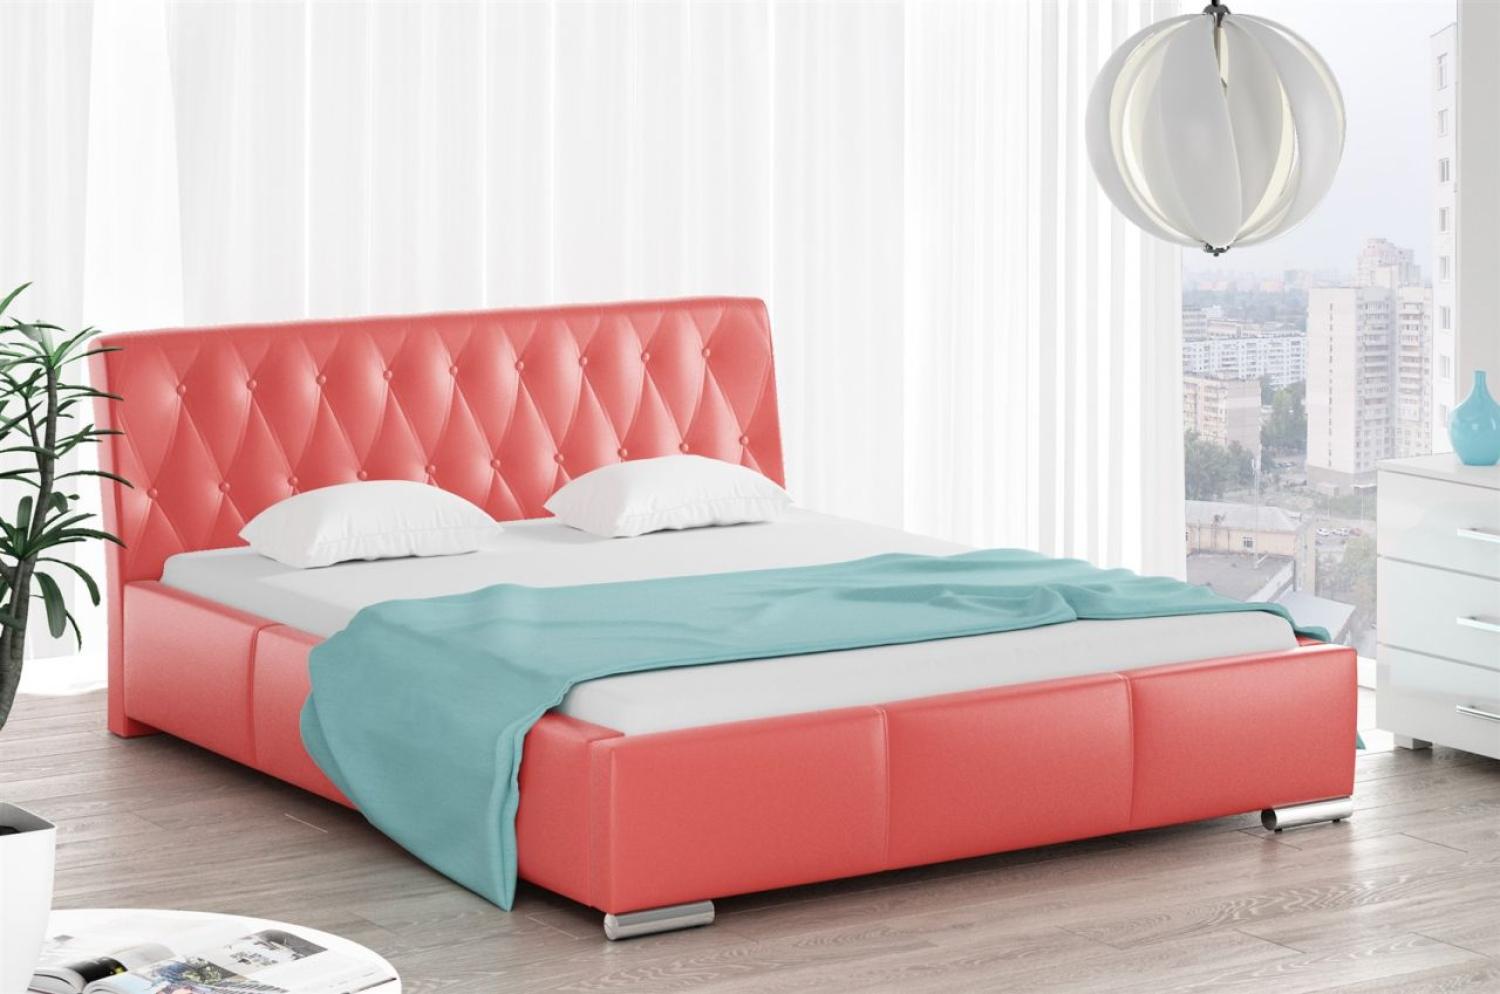 Polsterbett Bett Doppelbett THORE Kunstleder Rot 140x200cm Bild 1